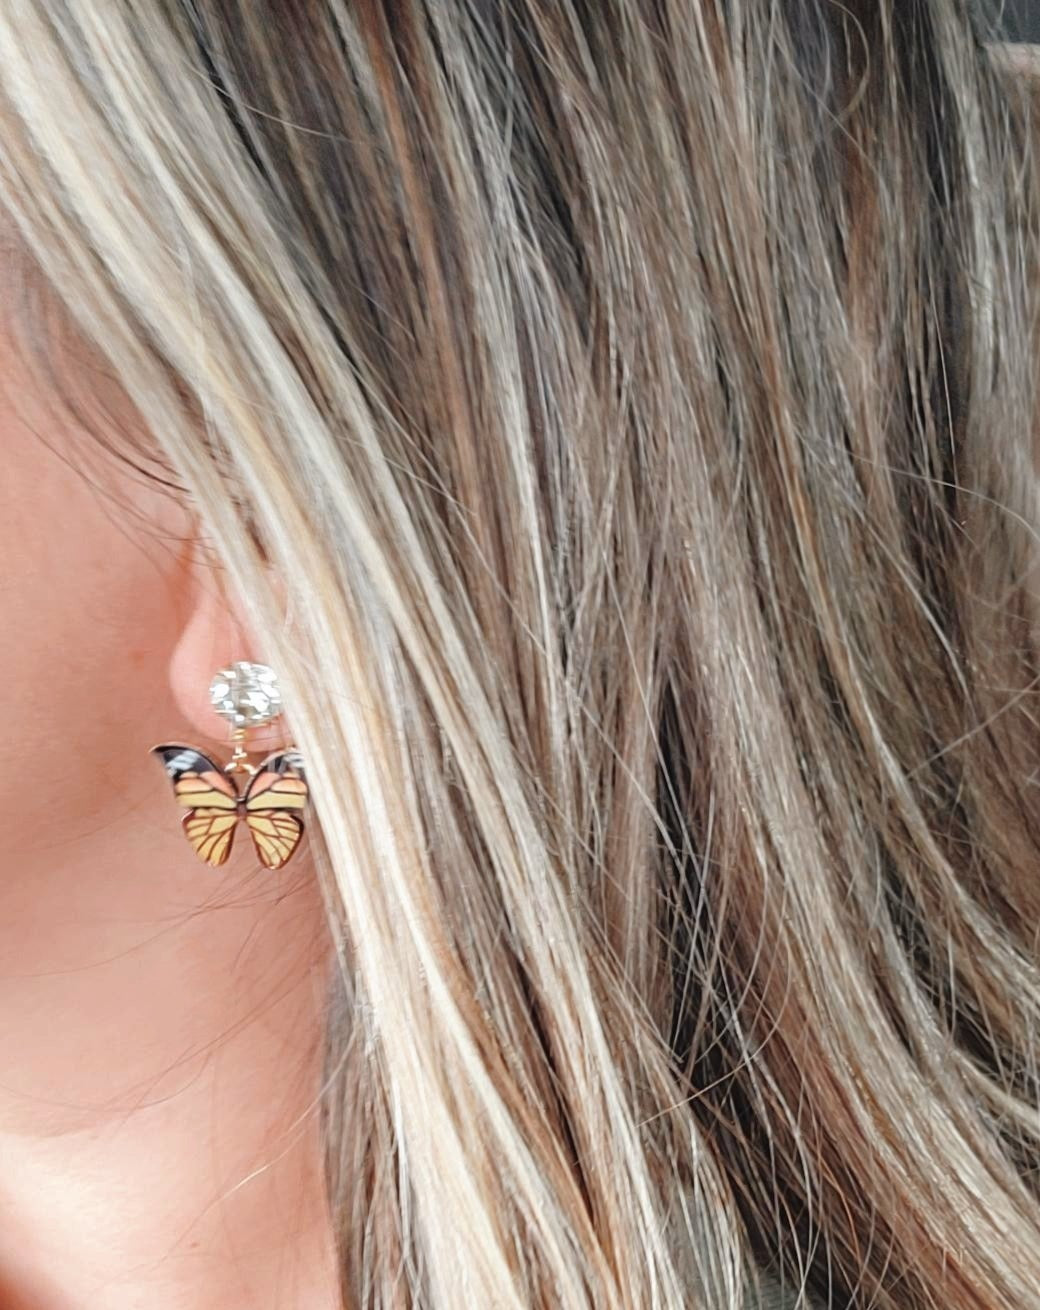 Stud Butterfly Dangle Earrings-6 Colors